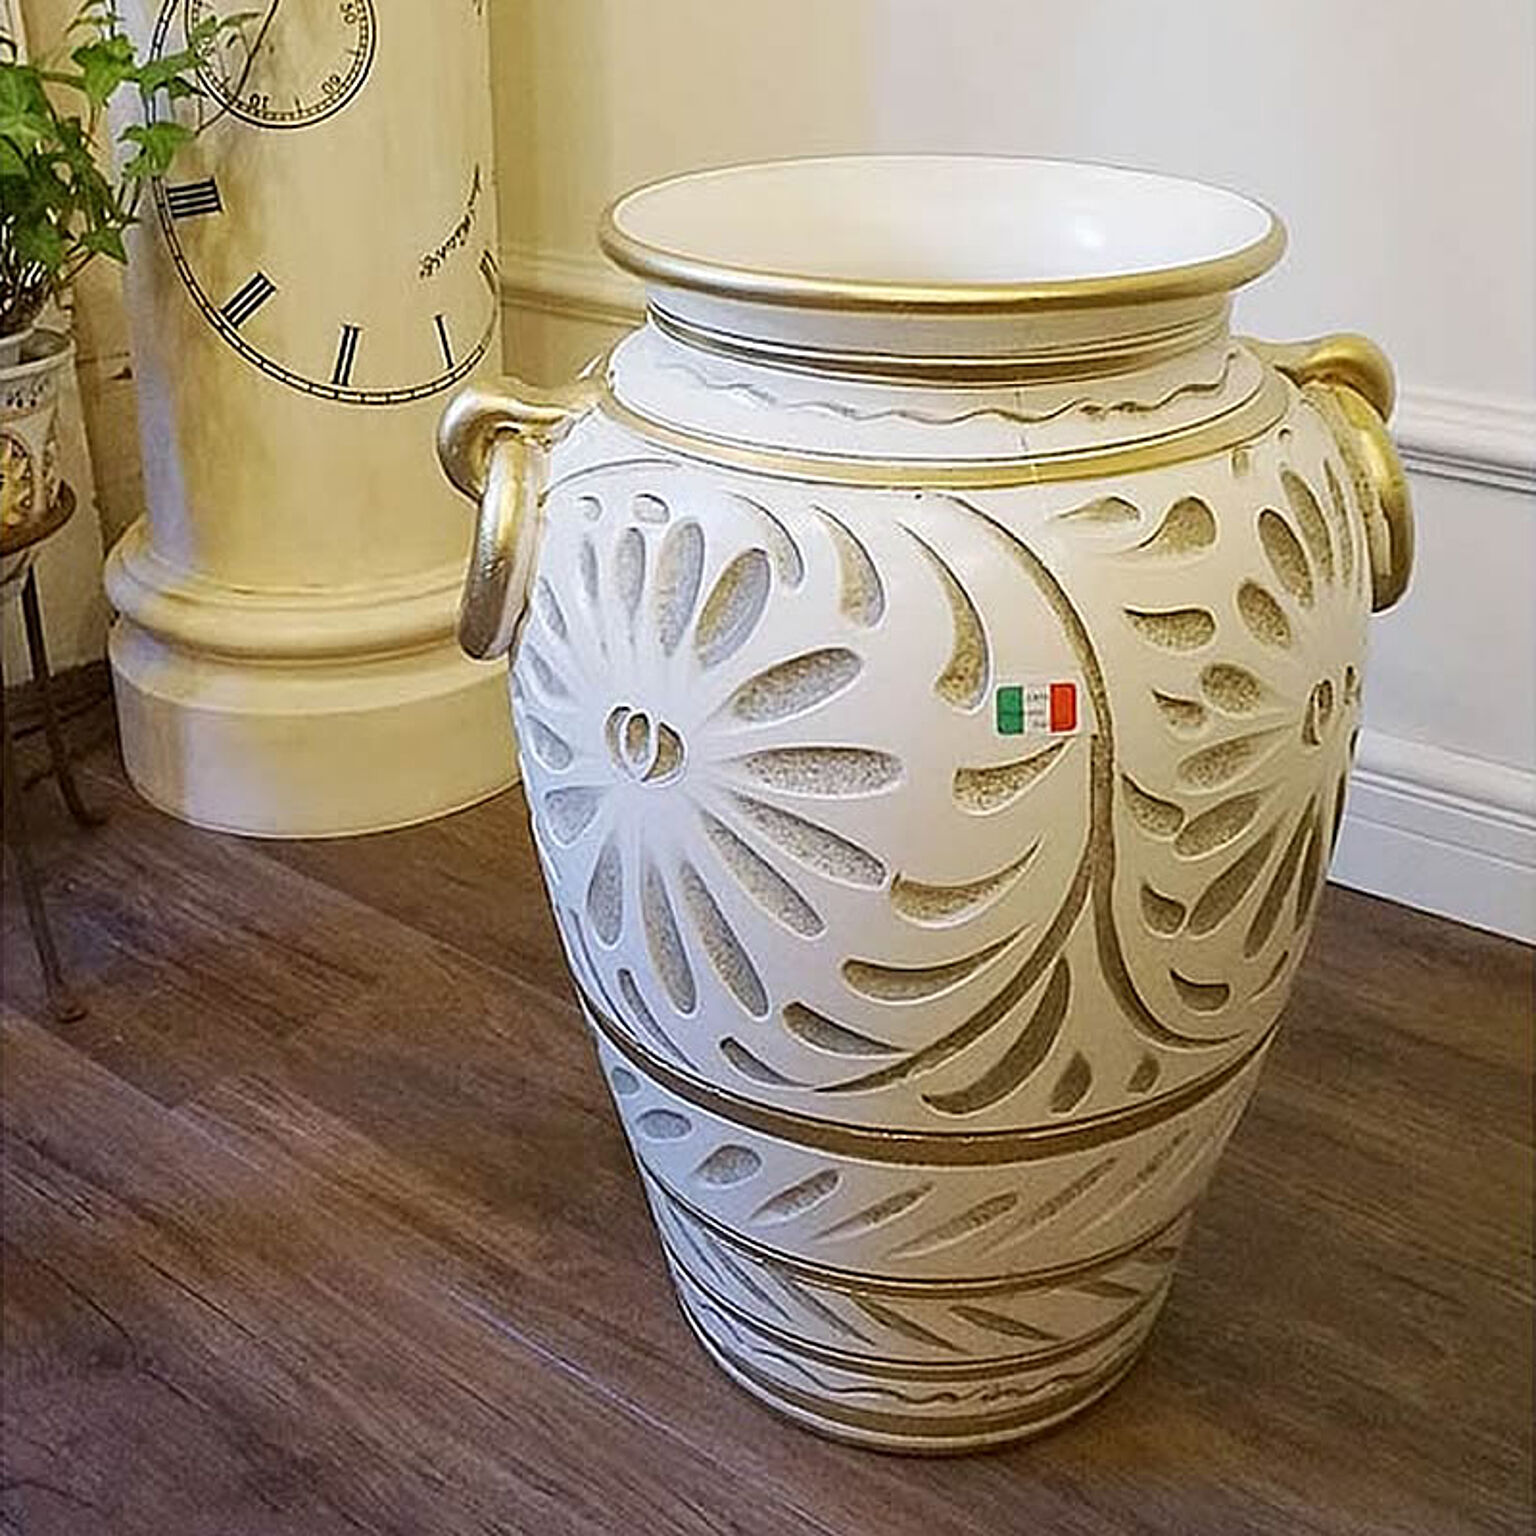 イタリア製 アンブレラスタンド 傘立て 陶器 白 ホワイト 手彩色 壺型